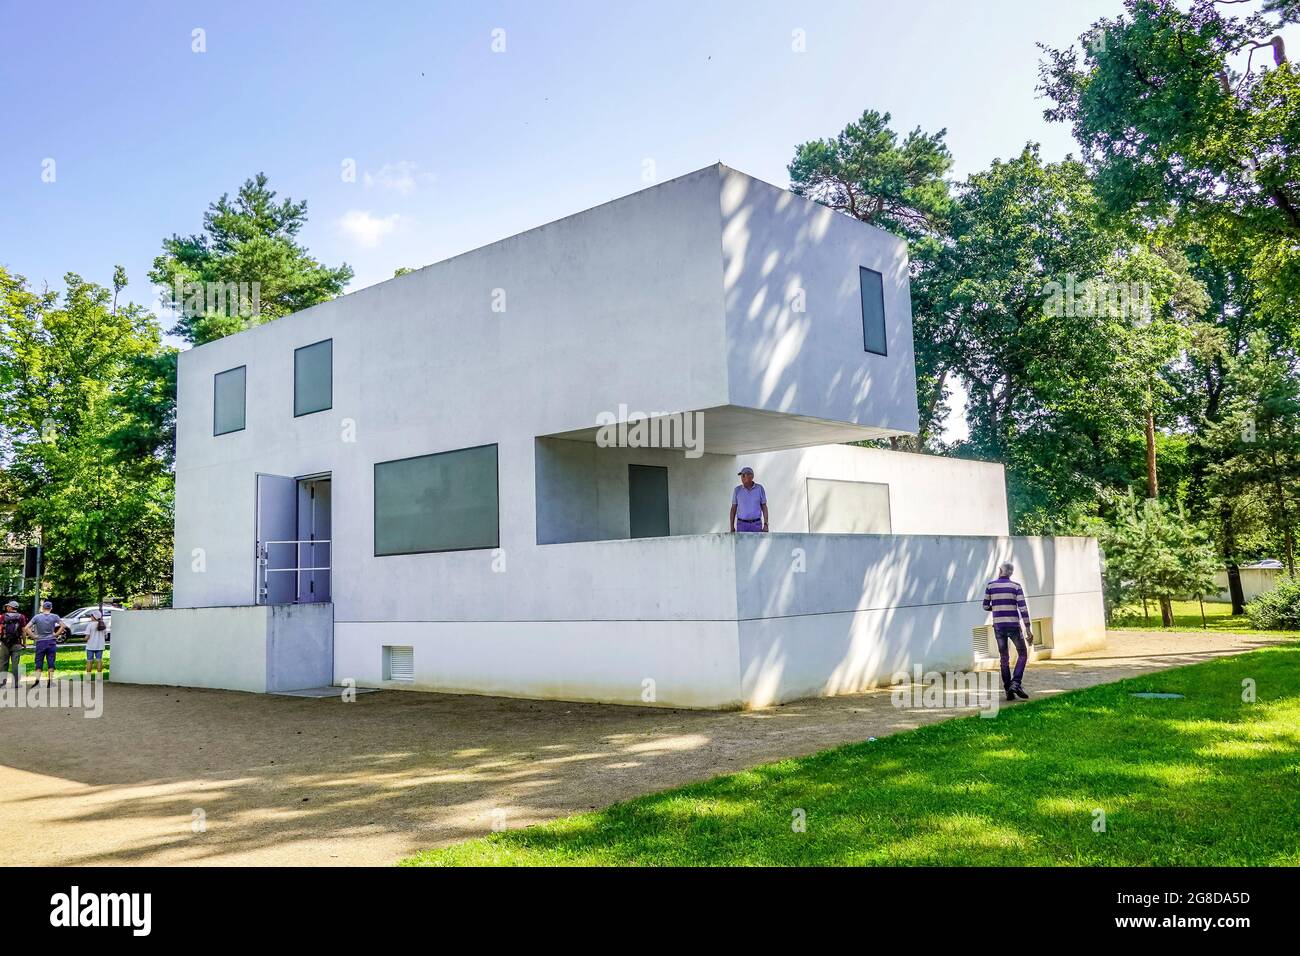 Gropius, Meisterhaussiedlung Haus, Ebertallee, Dessau, Sachsen-Anhalt, Allemagne Banque D'Images